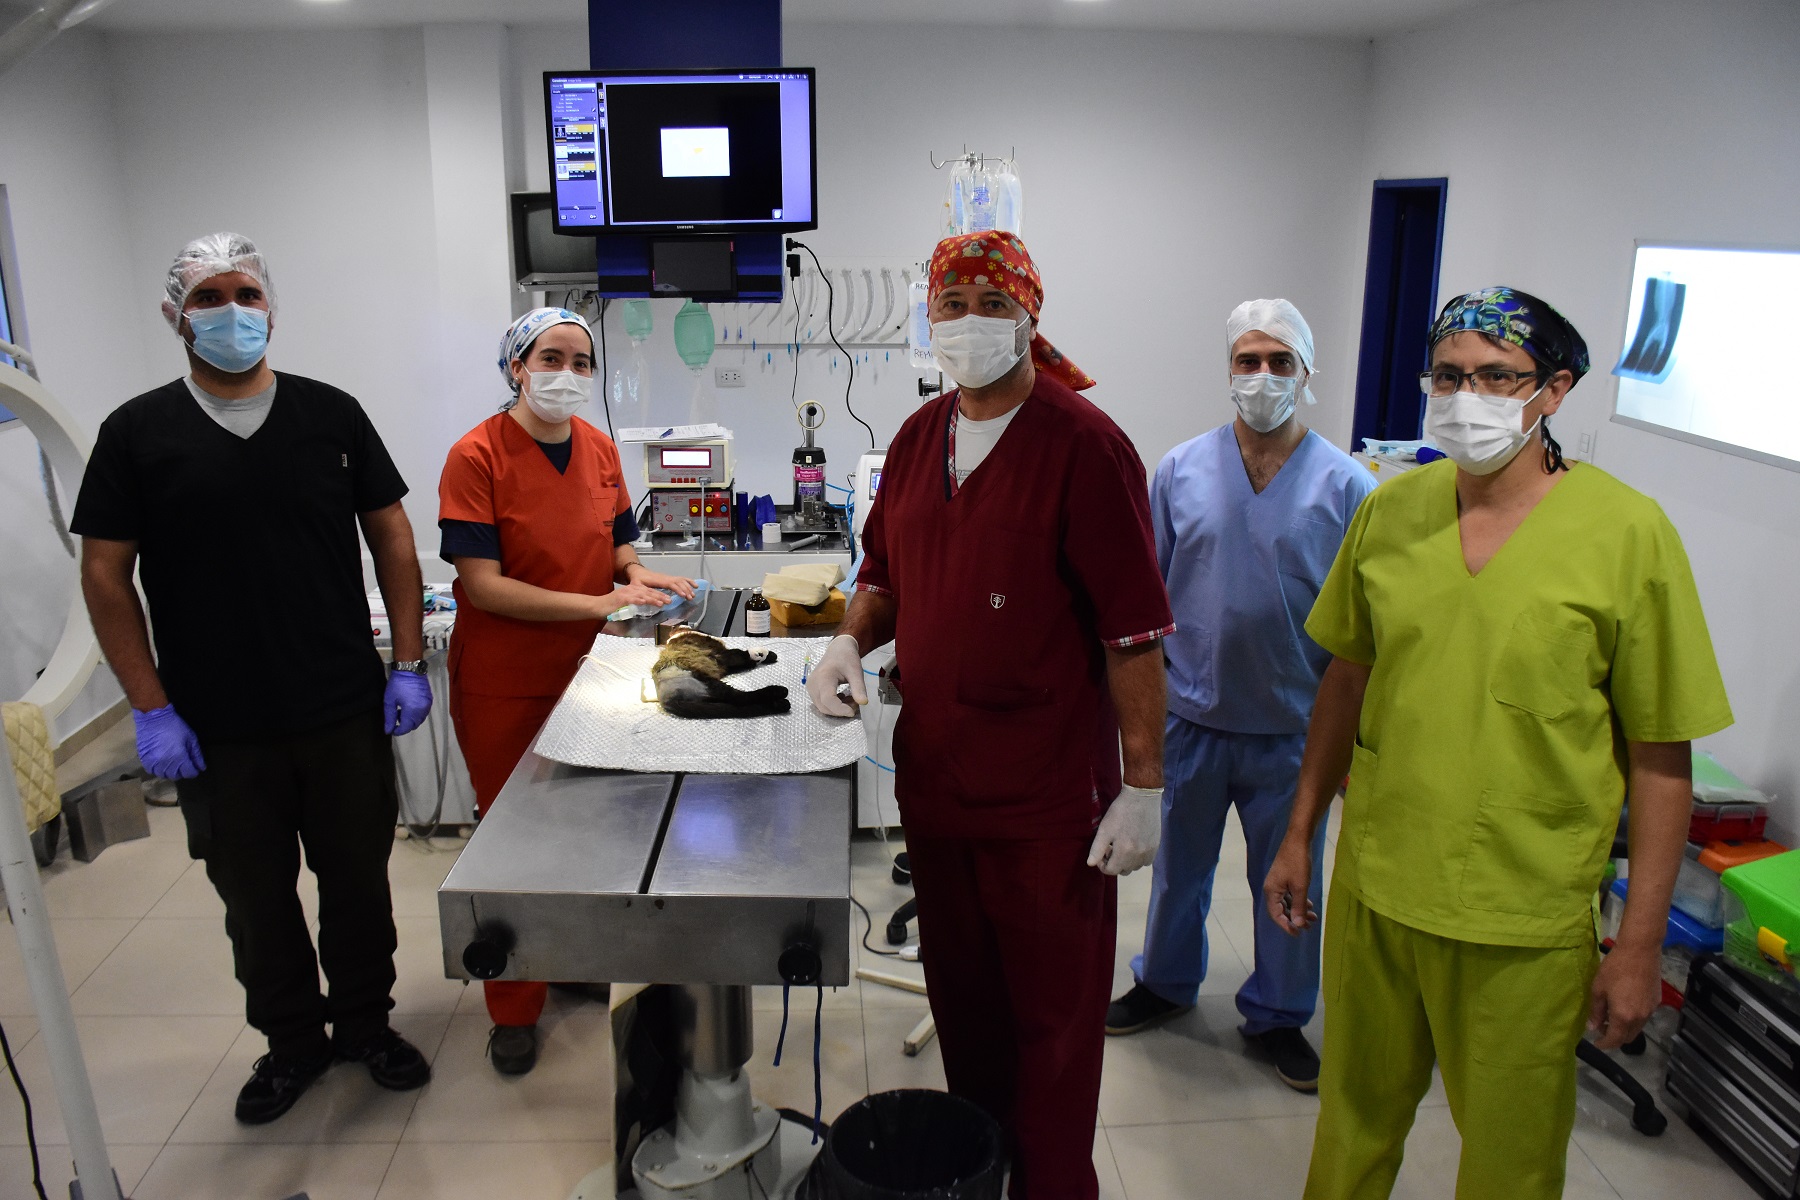 El equipo, funcionando a pleno durante uno de los procedimientos médicos. (Fotos: César Izza)